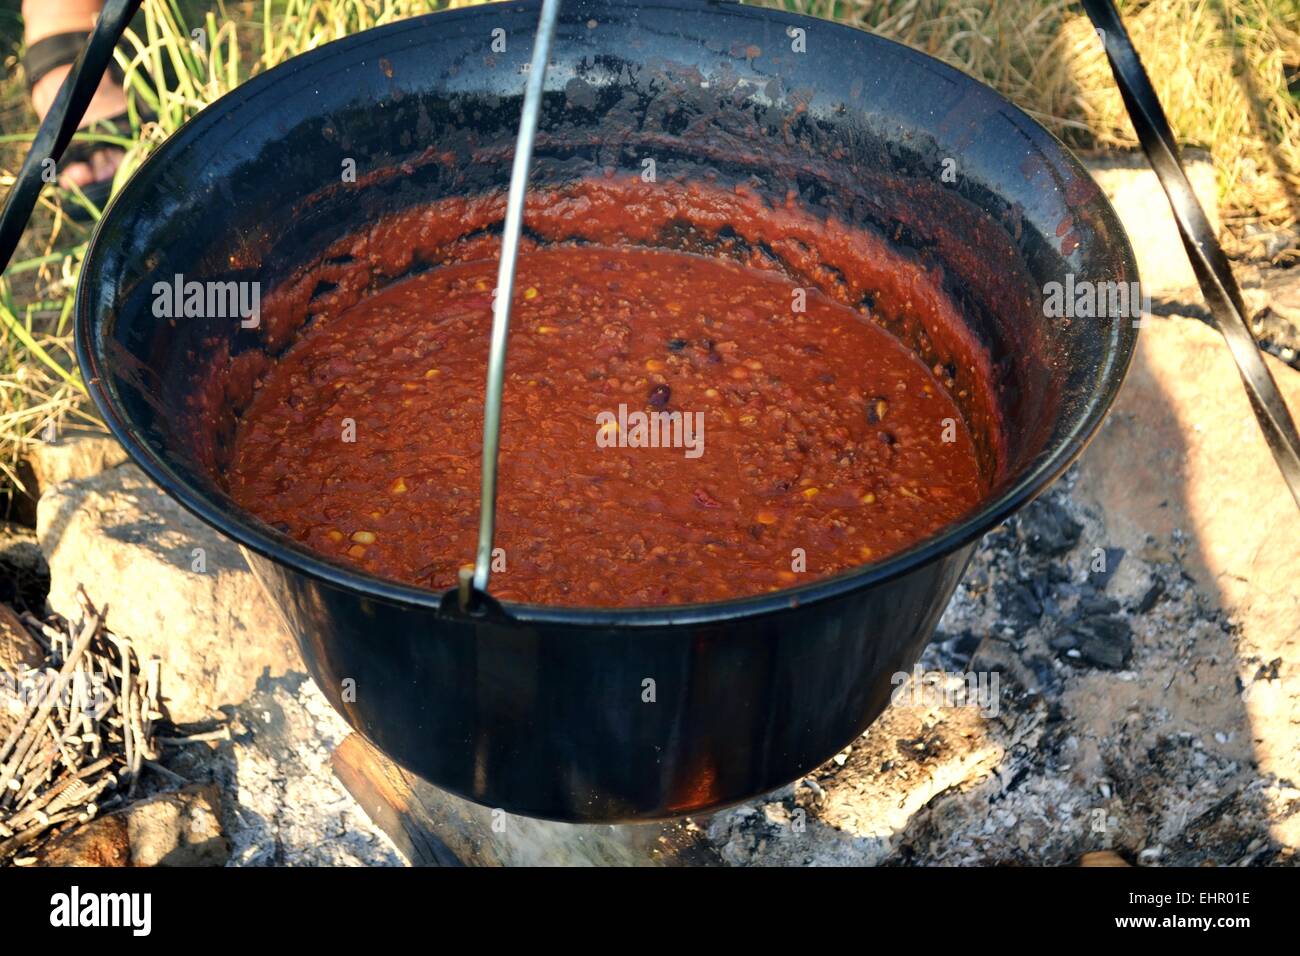 Chili con carne in a pot over a campfire Stock Photo